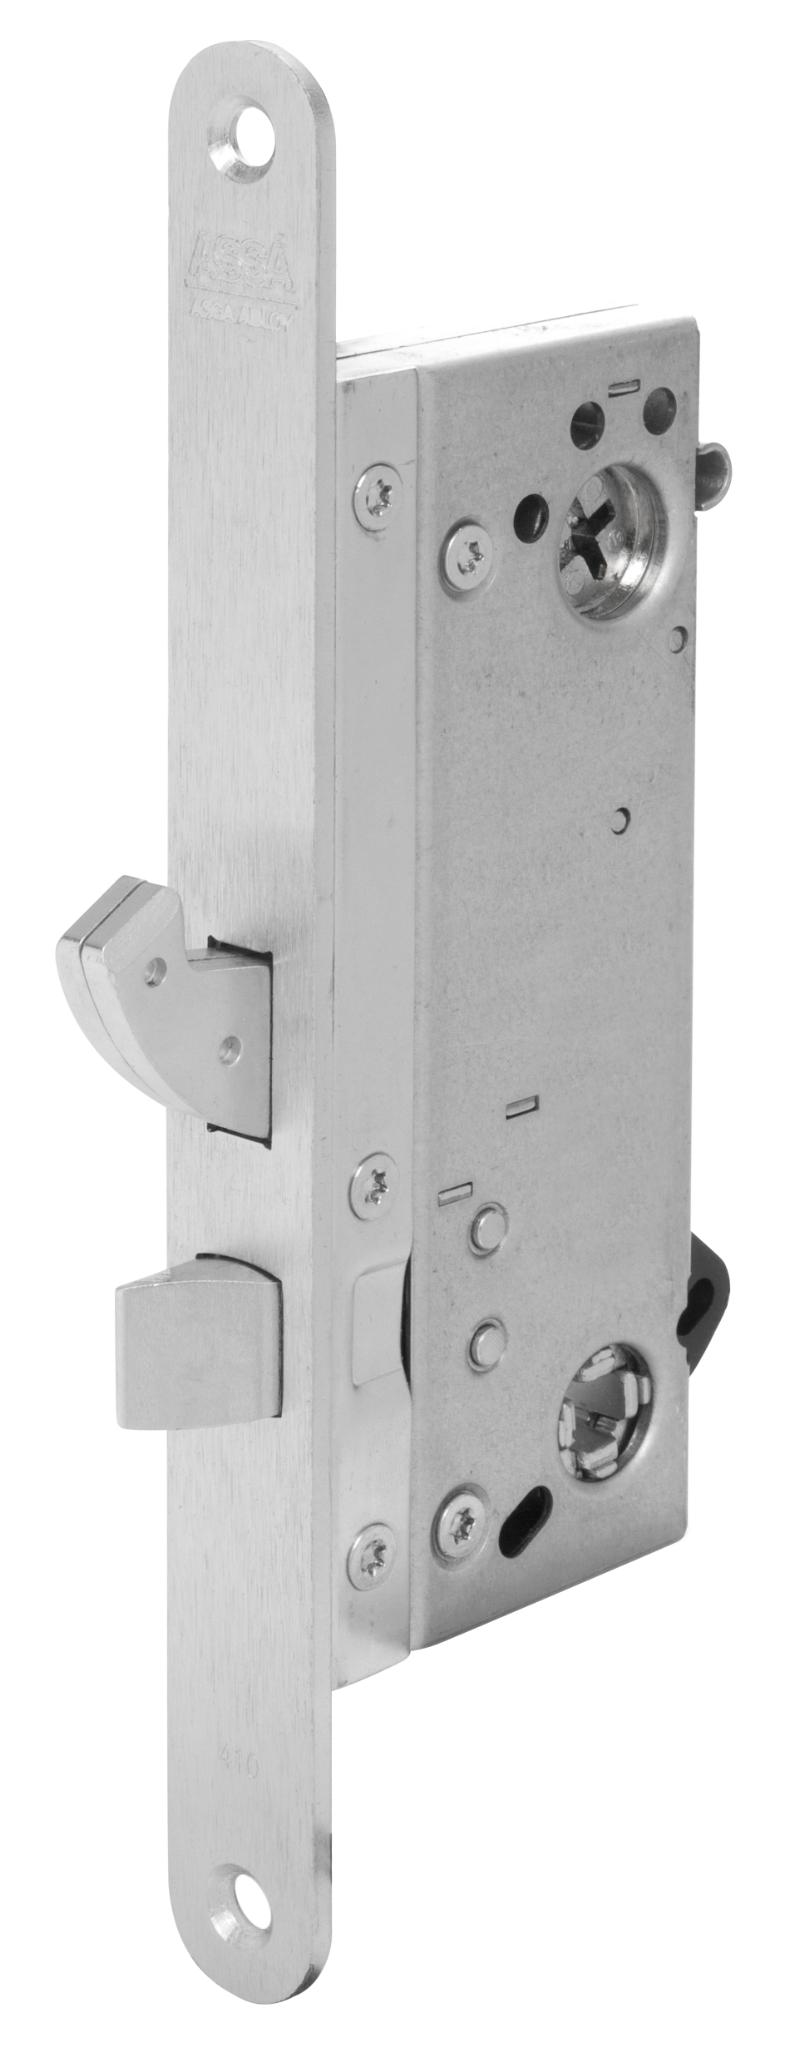 Assa-Schließkasten Connect 410 mit Mikroschalter, umkehrbar